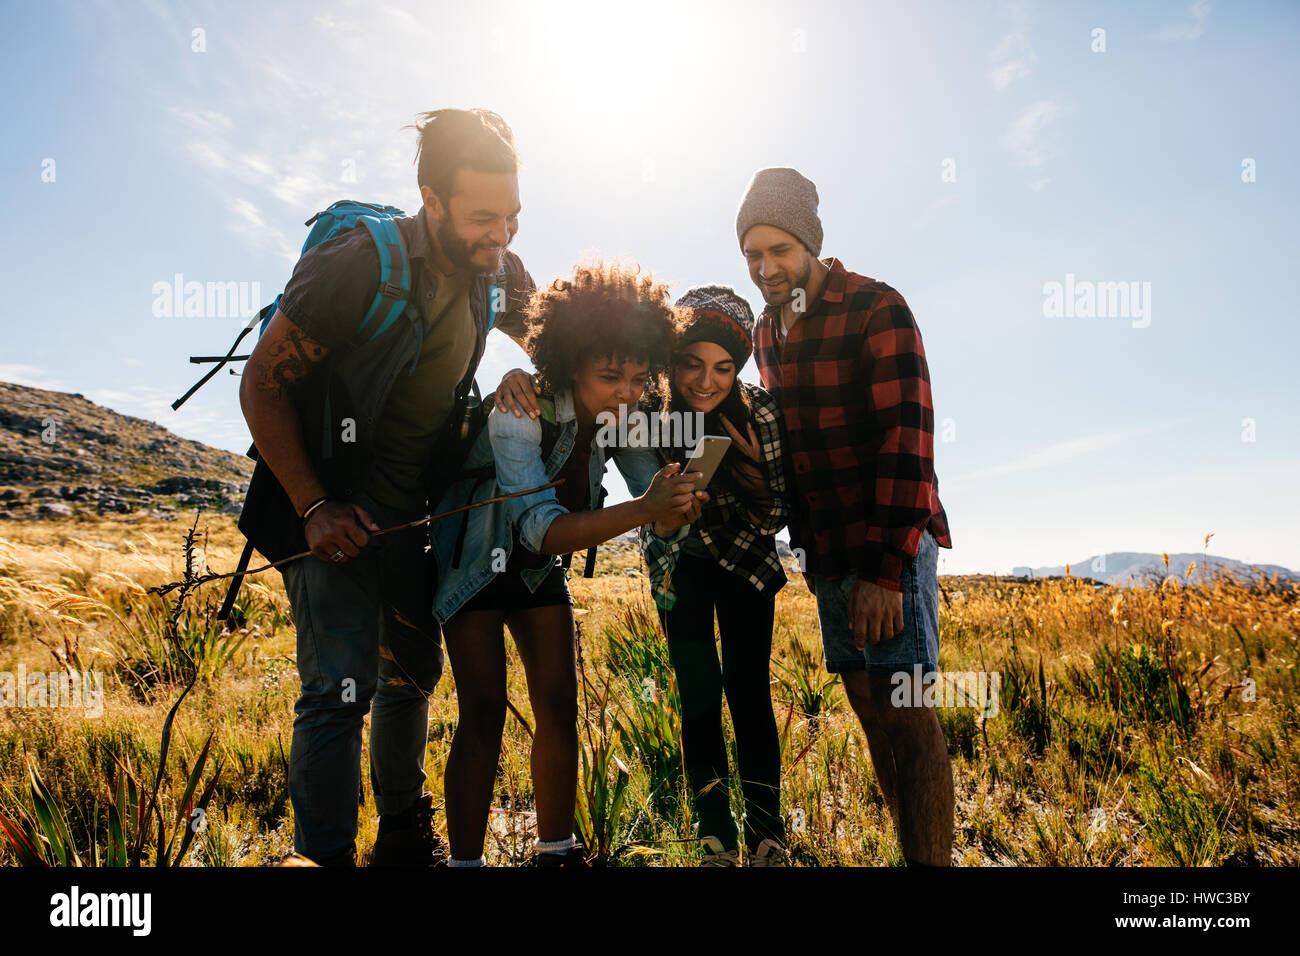 Afrikanische Frau mit Freunden im Landschaft zu fotografieren. Gruppe junger Menschen wandern in der Natur und fotografieren. Stockfoto